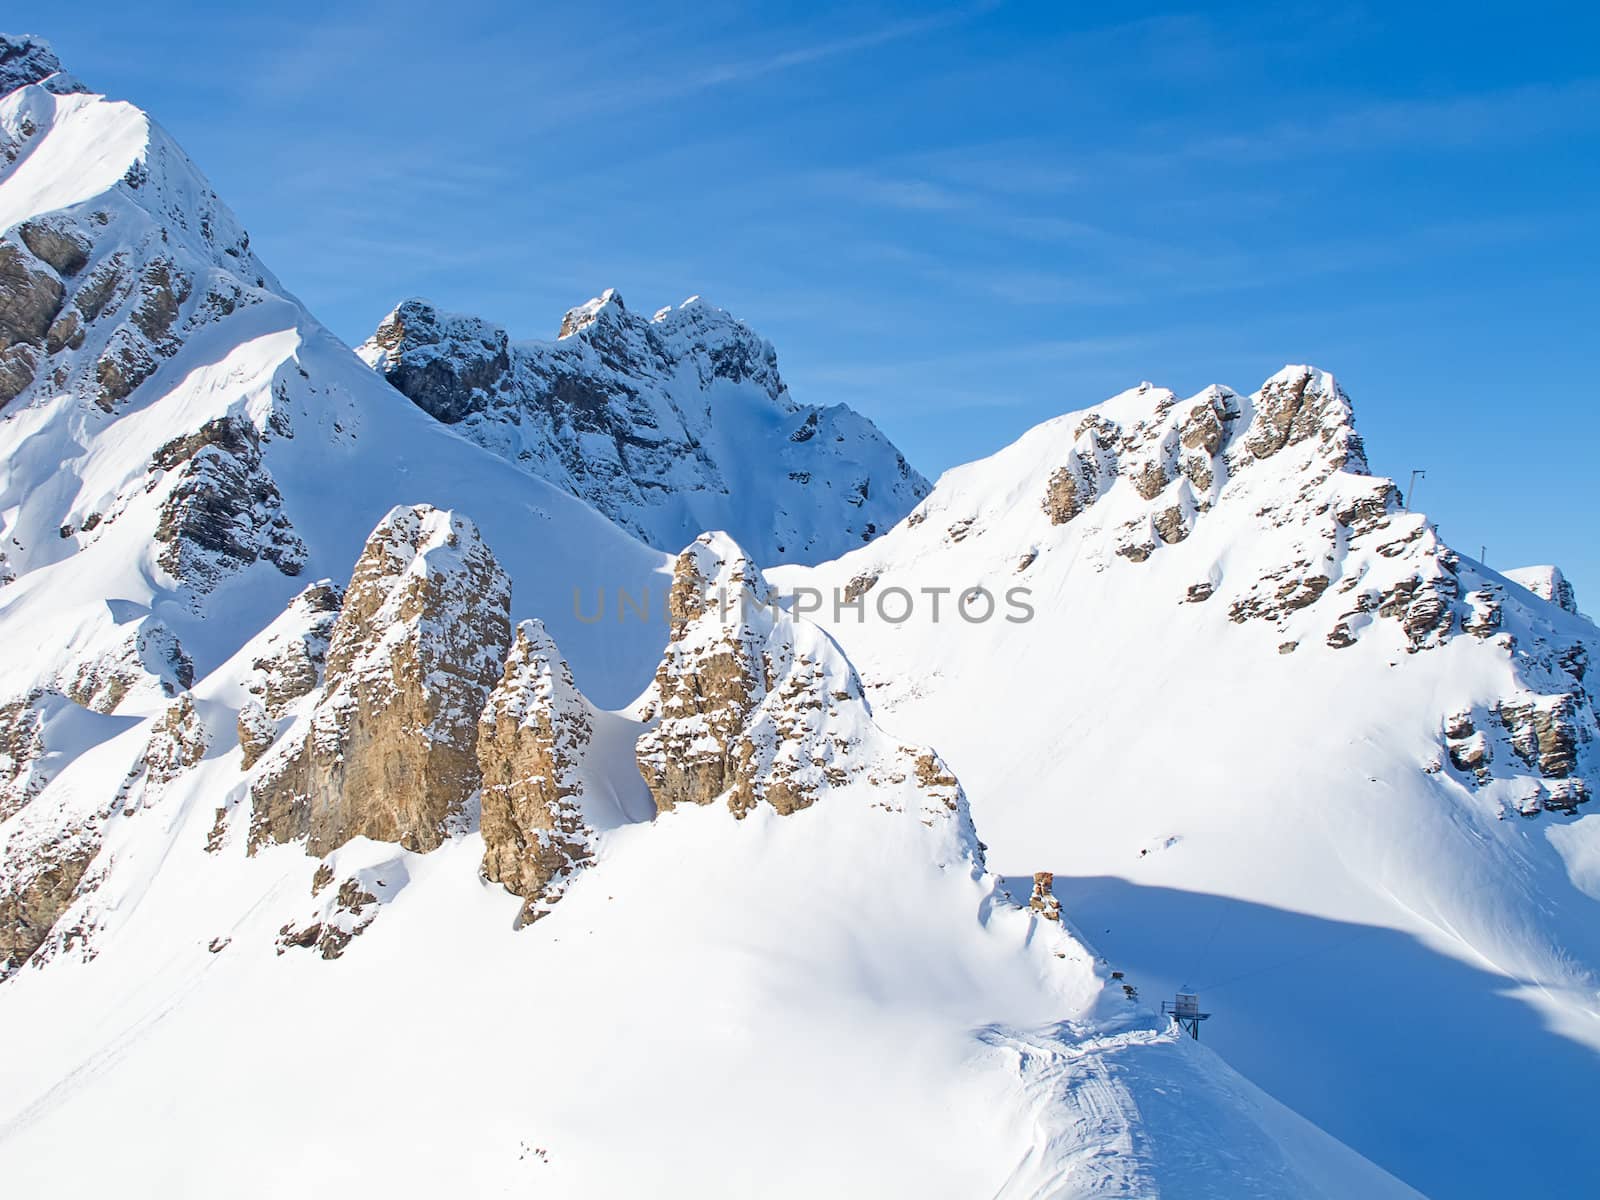 Winter in the swiss alps (Melchsee-Frutt, Luzern, Switzerland)